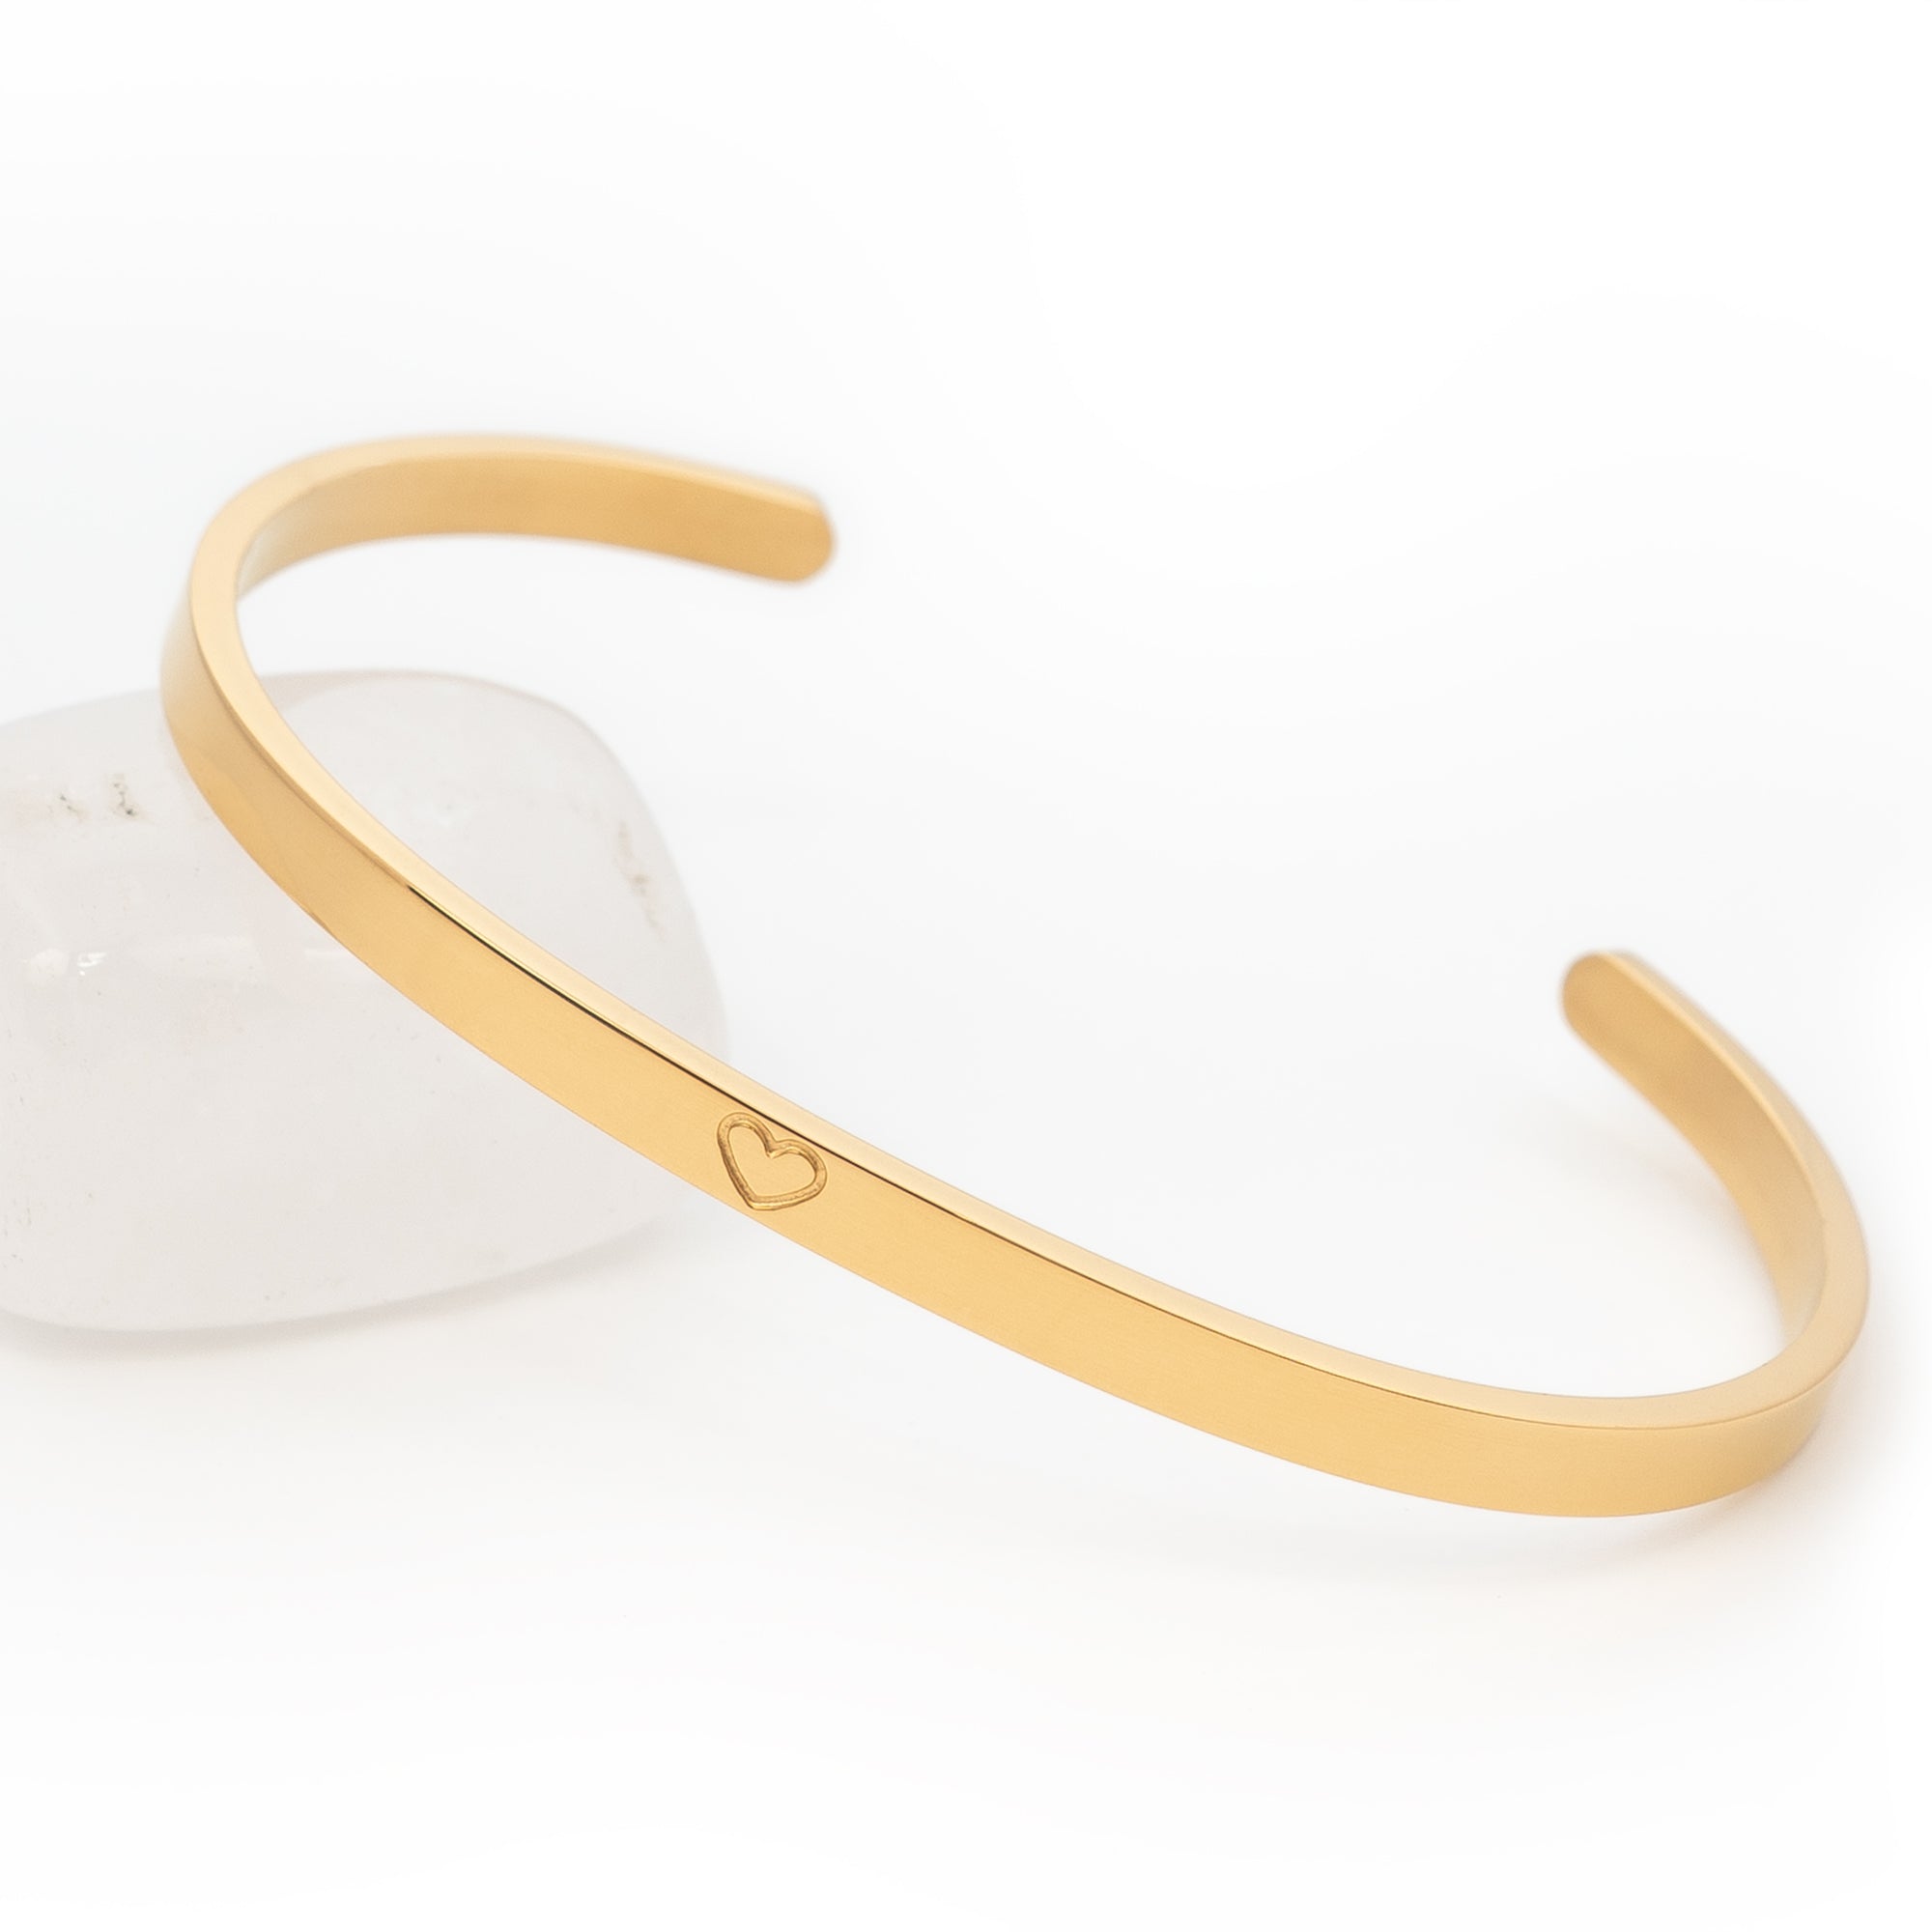 Bracelet Zen en Acier Inoxydable - Couleur Or : L'Harmonie et le Luxe à Votre Poignet